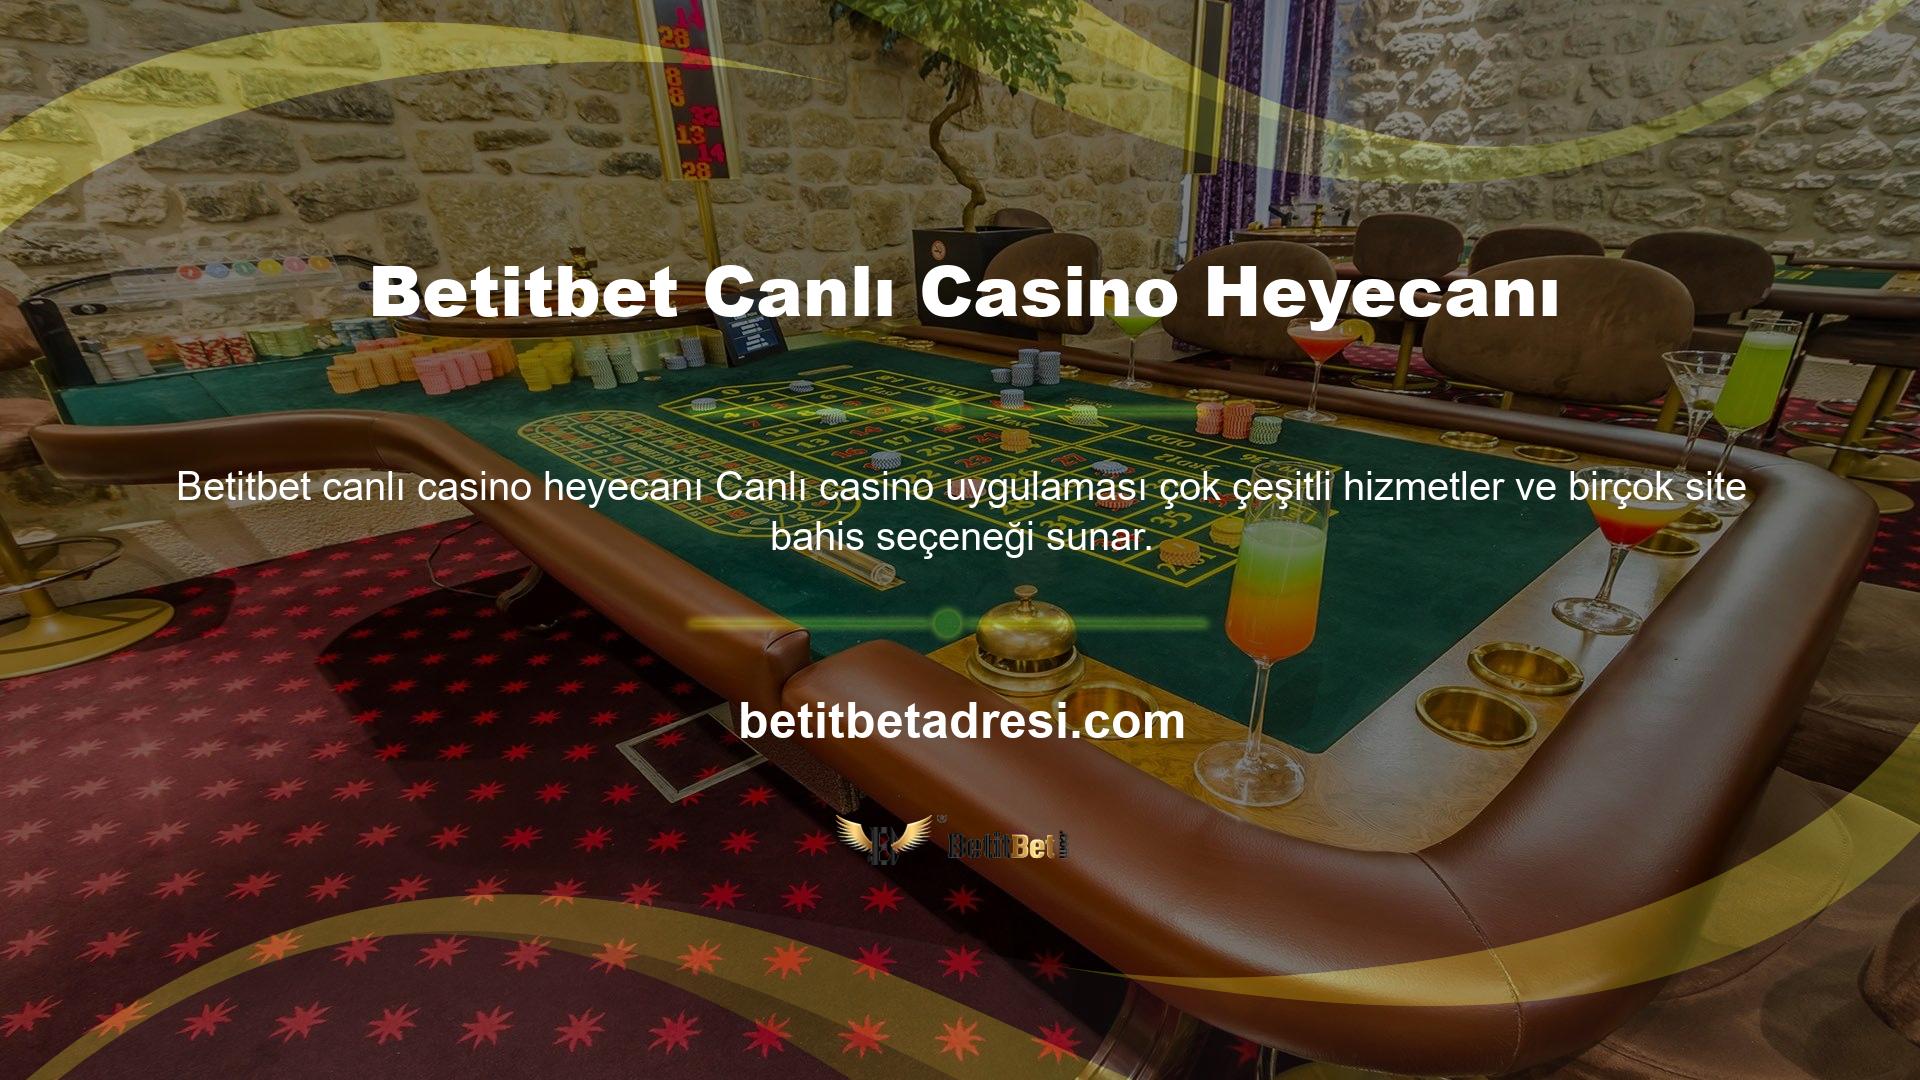 Betitbet Canlı Casino heyecanı için oyun masası gerçek rakiplerden oluşmaktadır